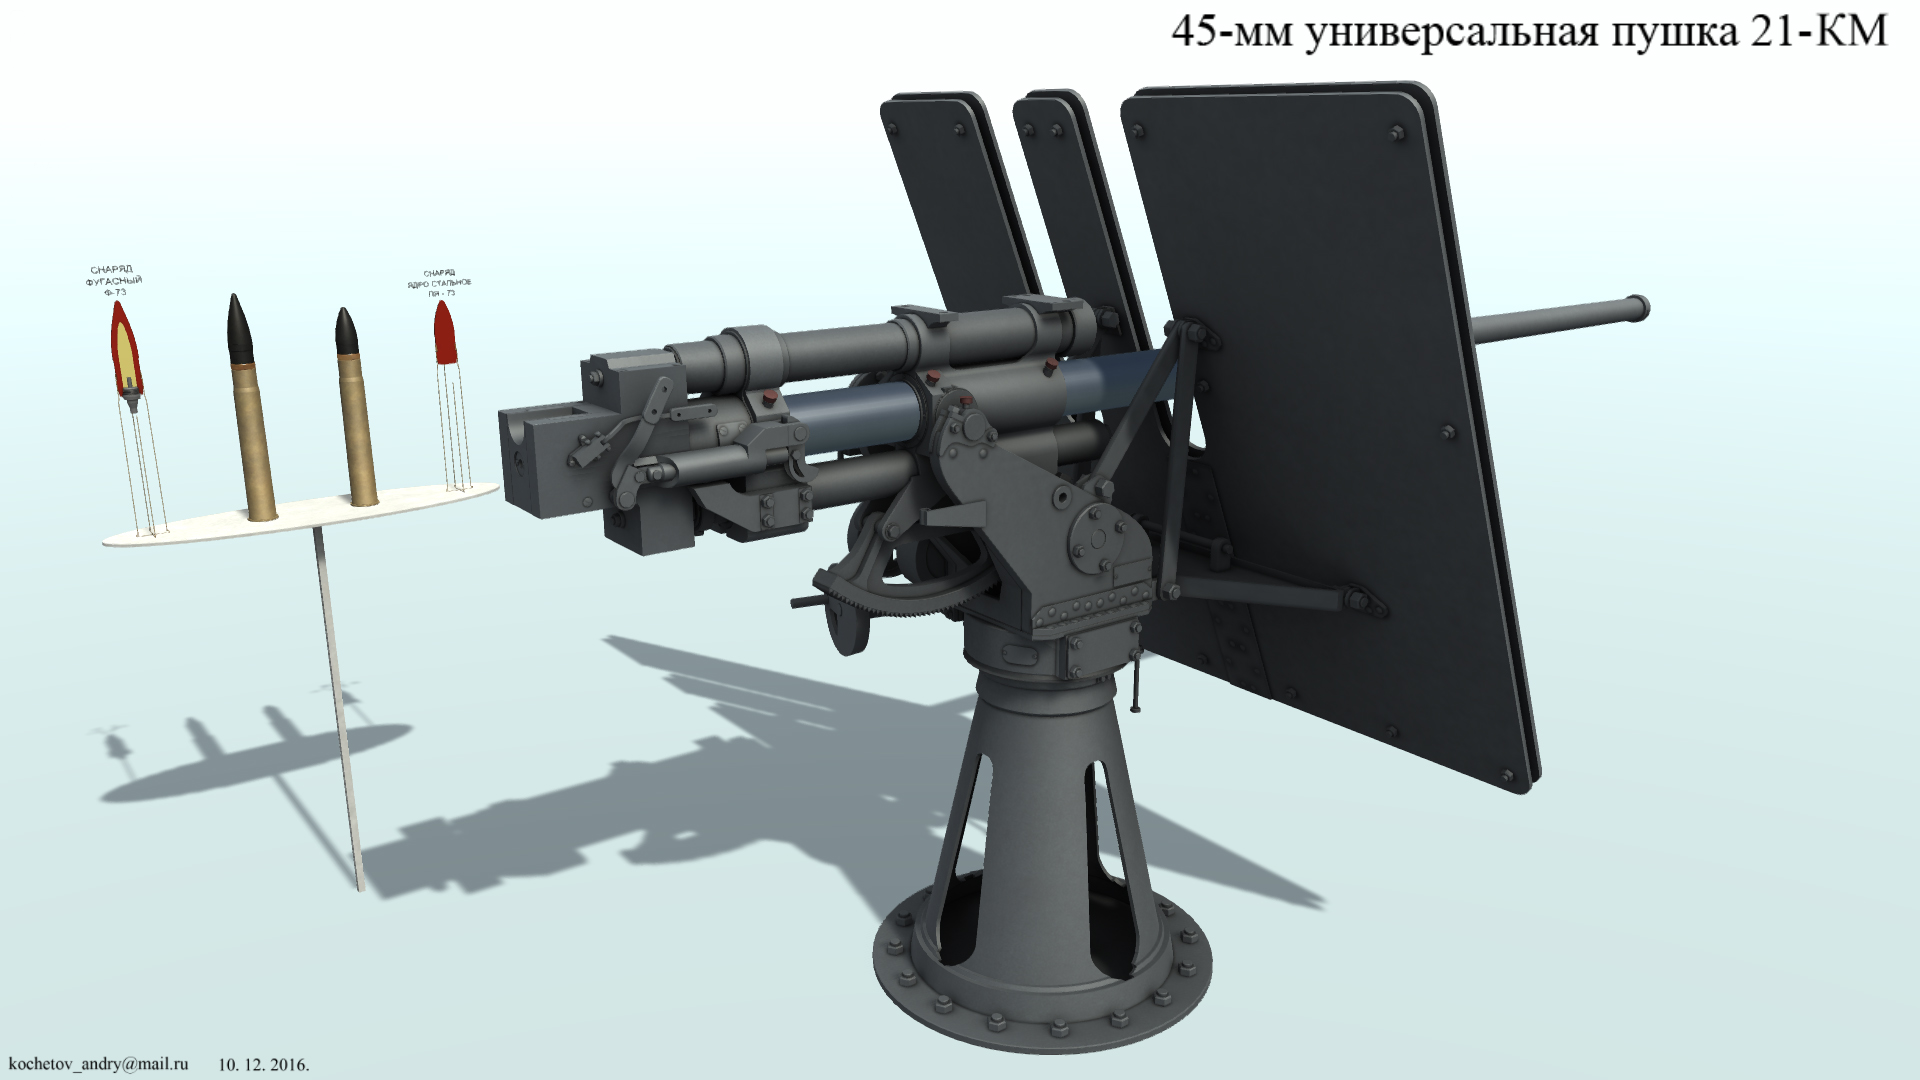 3D model. 45mm 21KM Cannon. Морская пушка 45мм 21КМ.